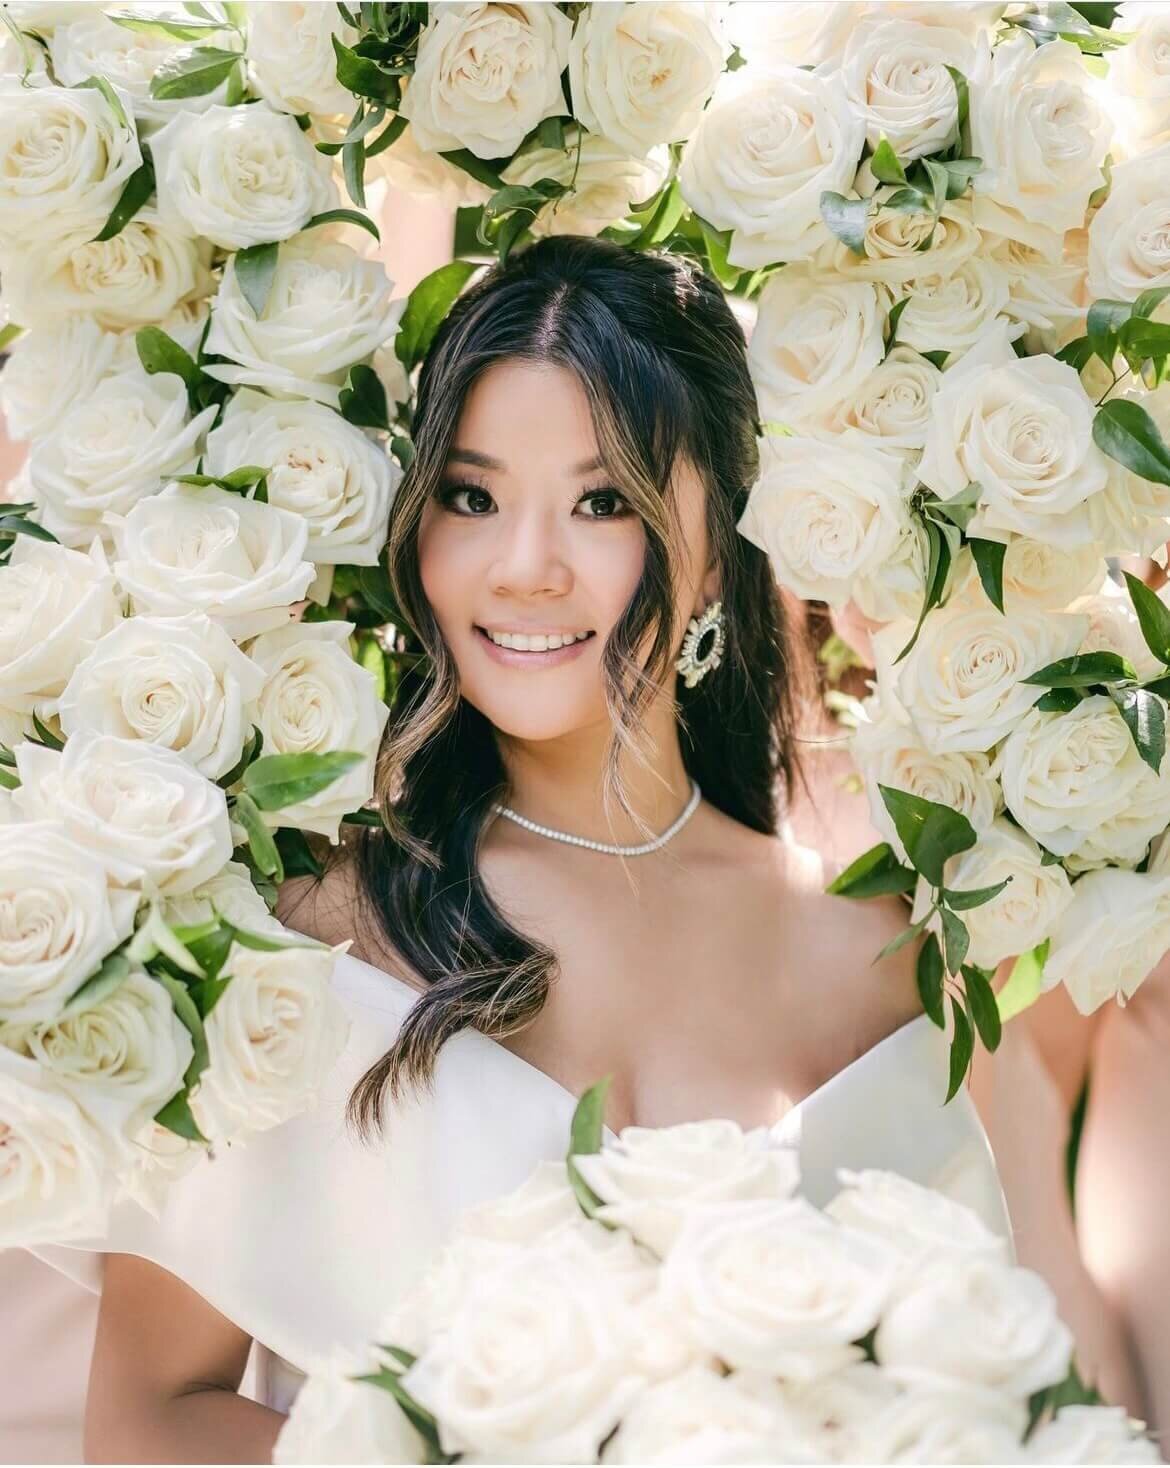 Korean bride with bouquets